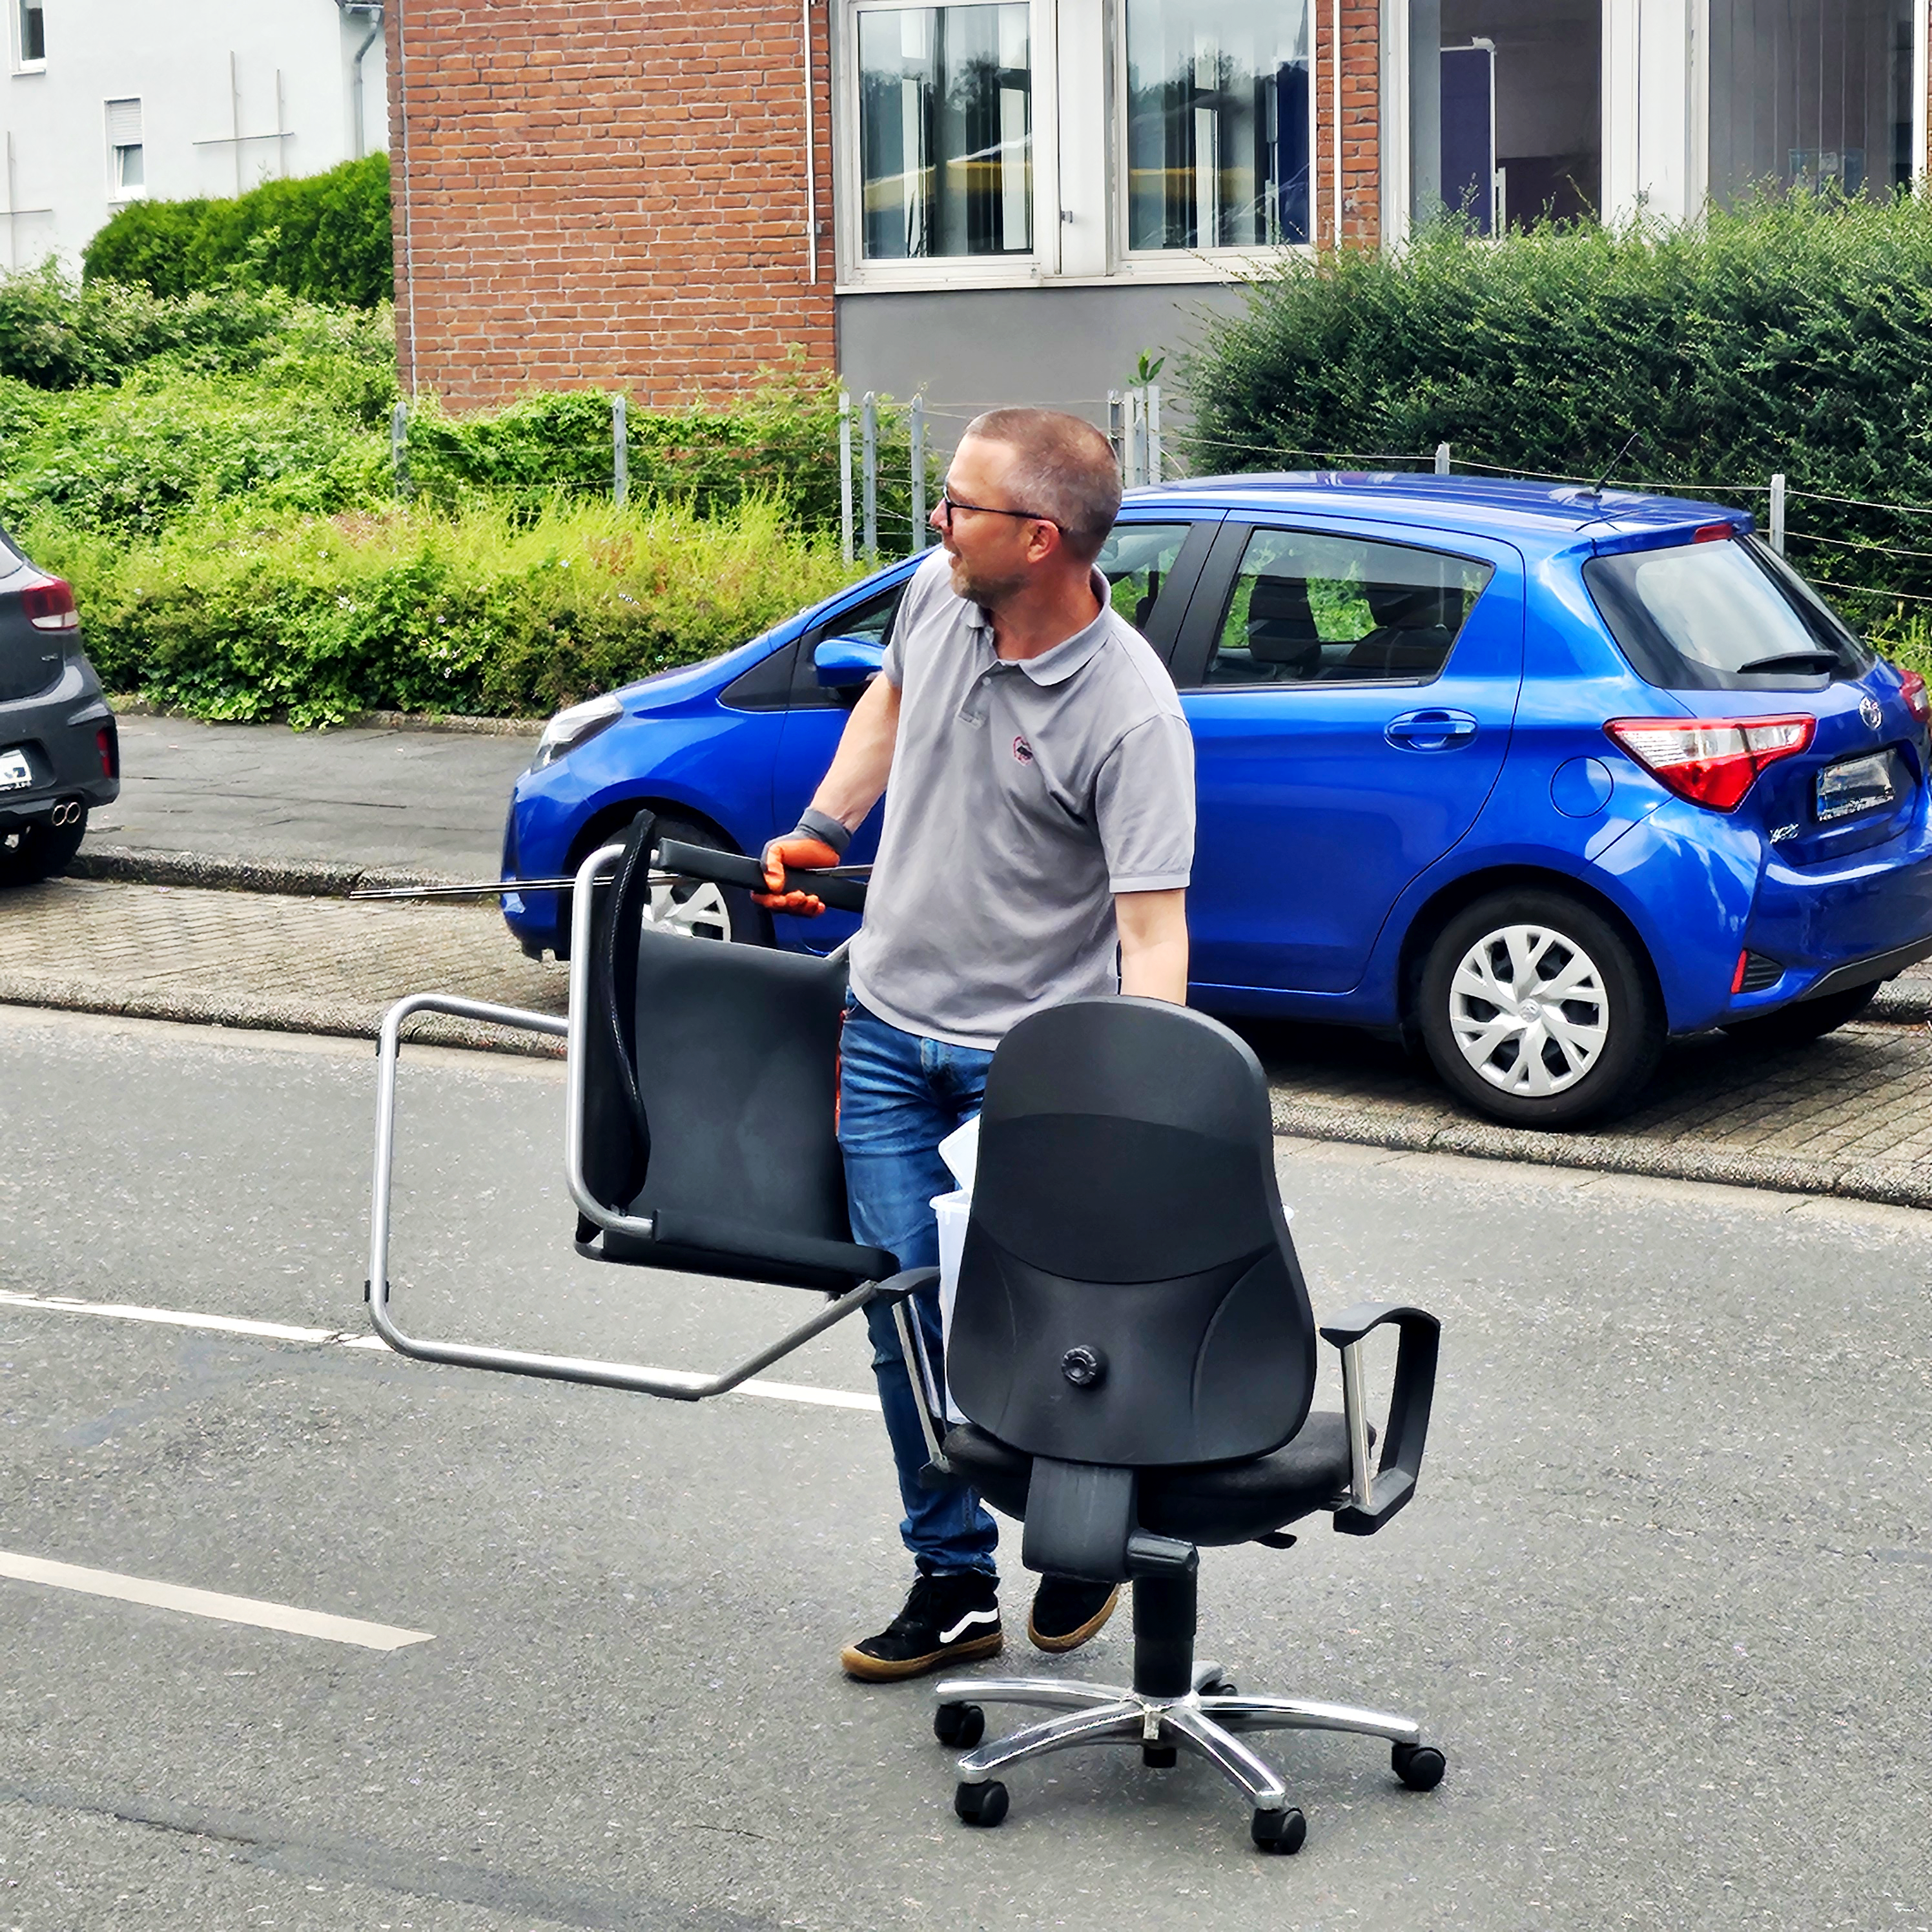 Das Foto zeigt eine Person, die zwei Bürostühle über eine Straße schiebt. Die Person trägt ein graues Hemd und Jeans. Hinter der Person ist ein blauer geparkter Wagen zu sehen, und im Hintergrund sind Gebäude mit Grünflächen erkennbar.